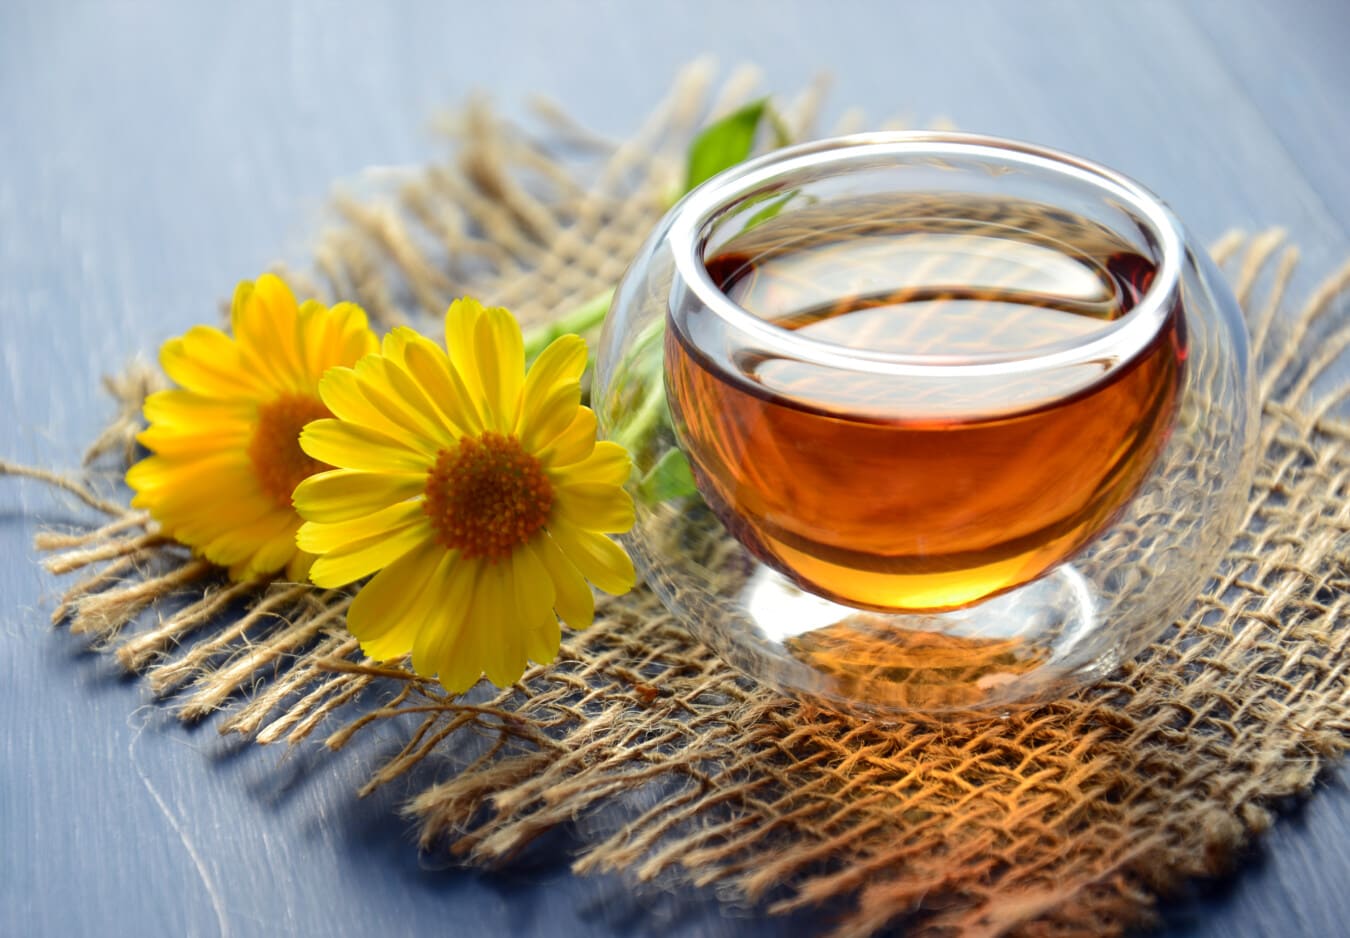 nechtík, čaj, olej, éterický olej, nápoj, medicína, liek, zátišie, tradičné, bylina